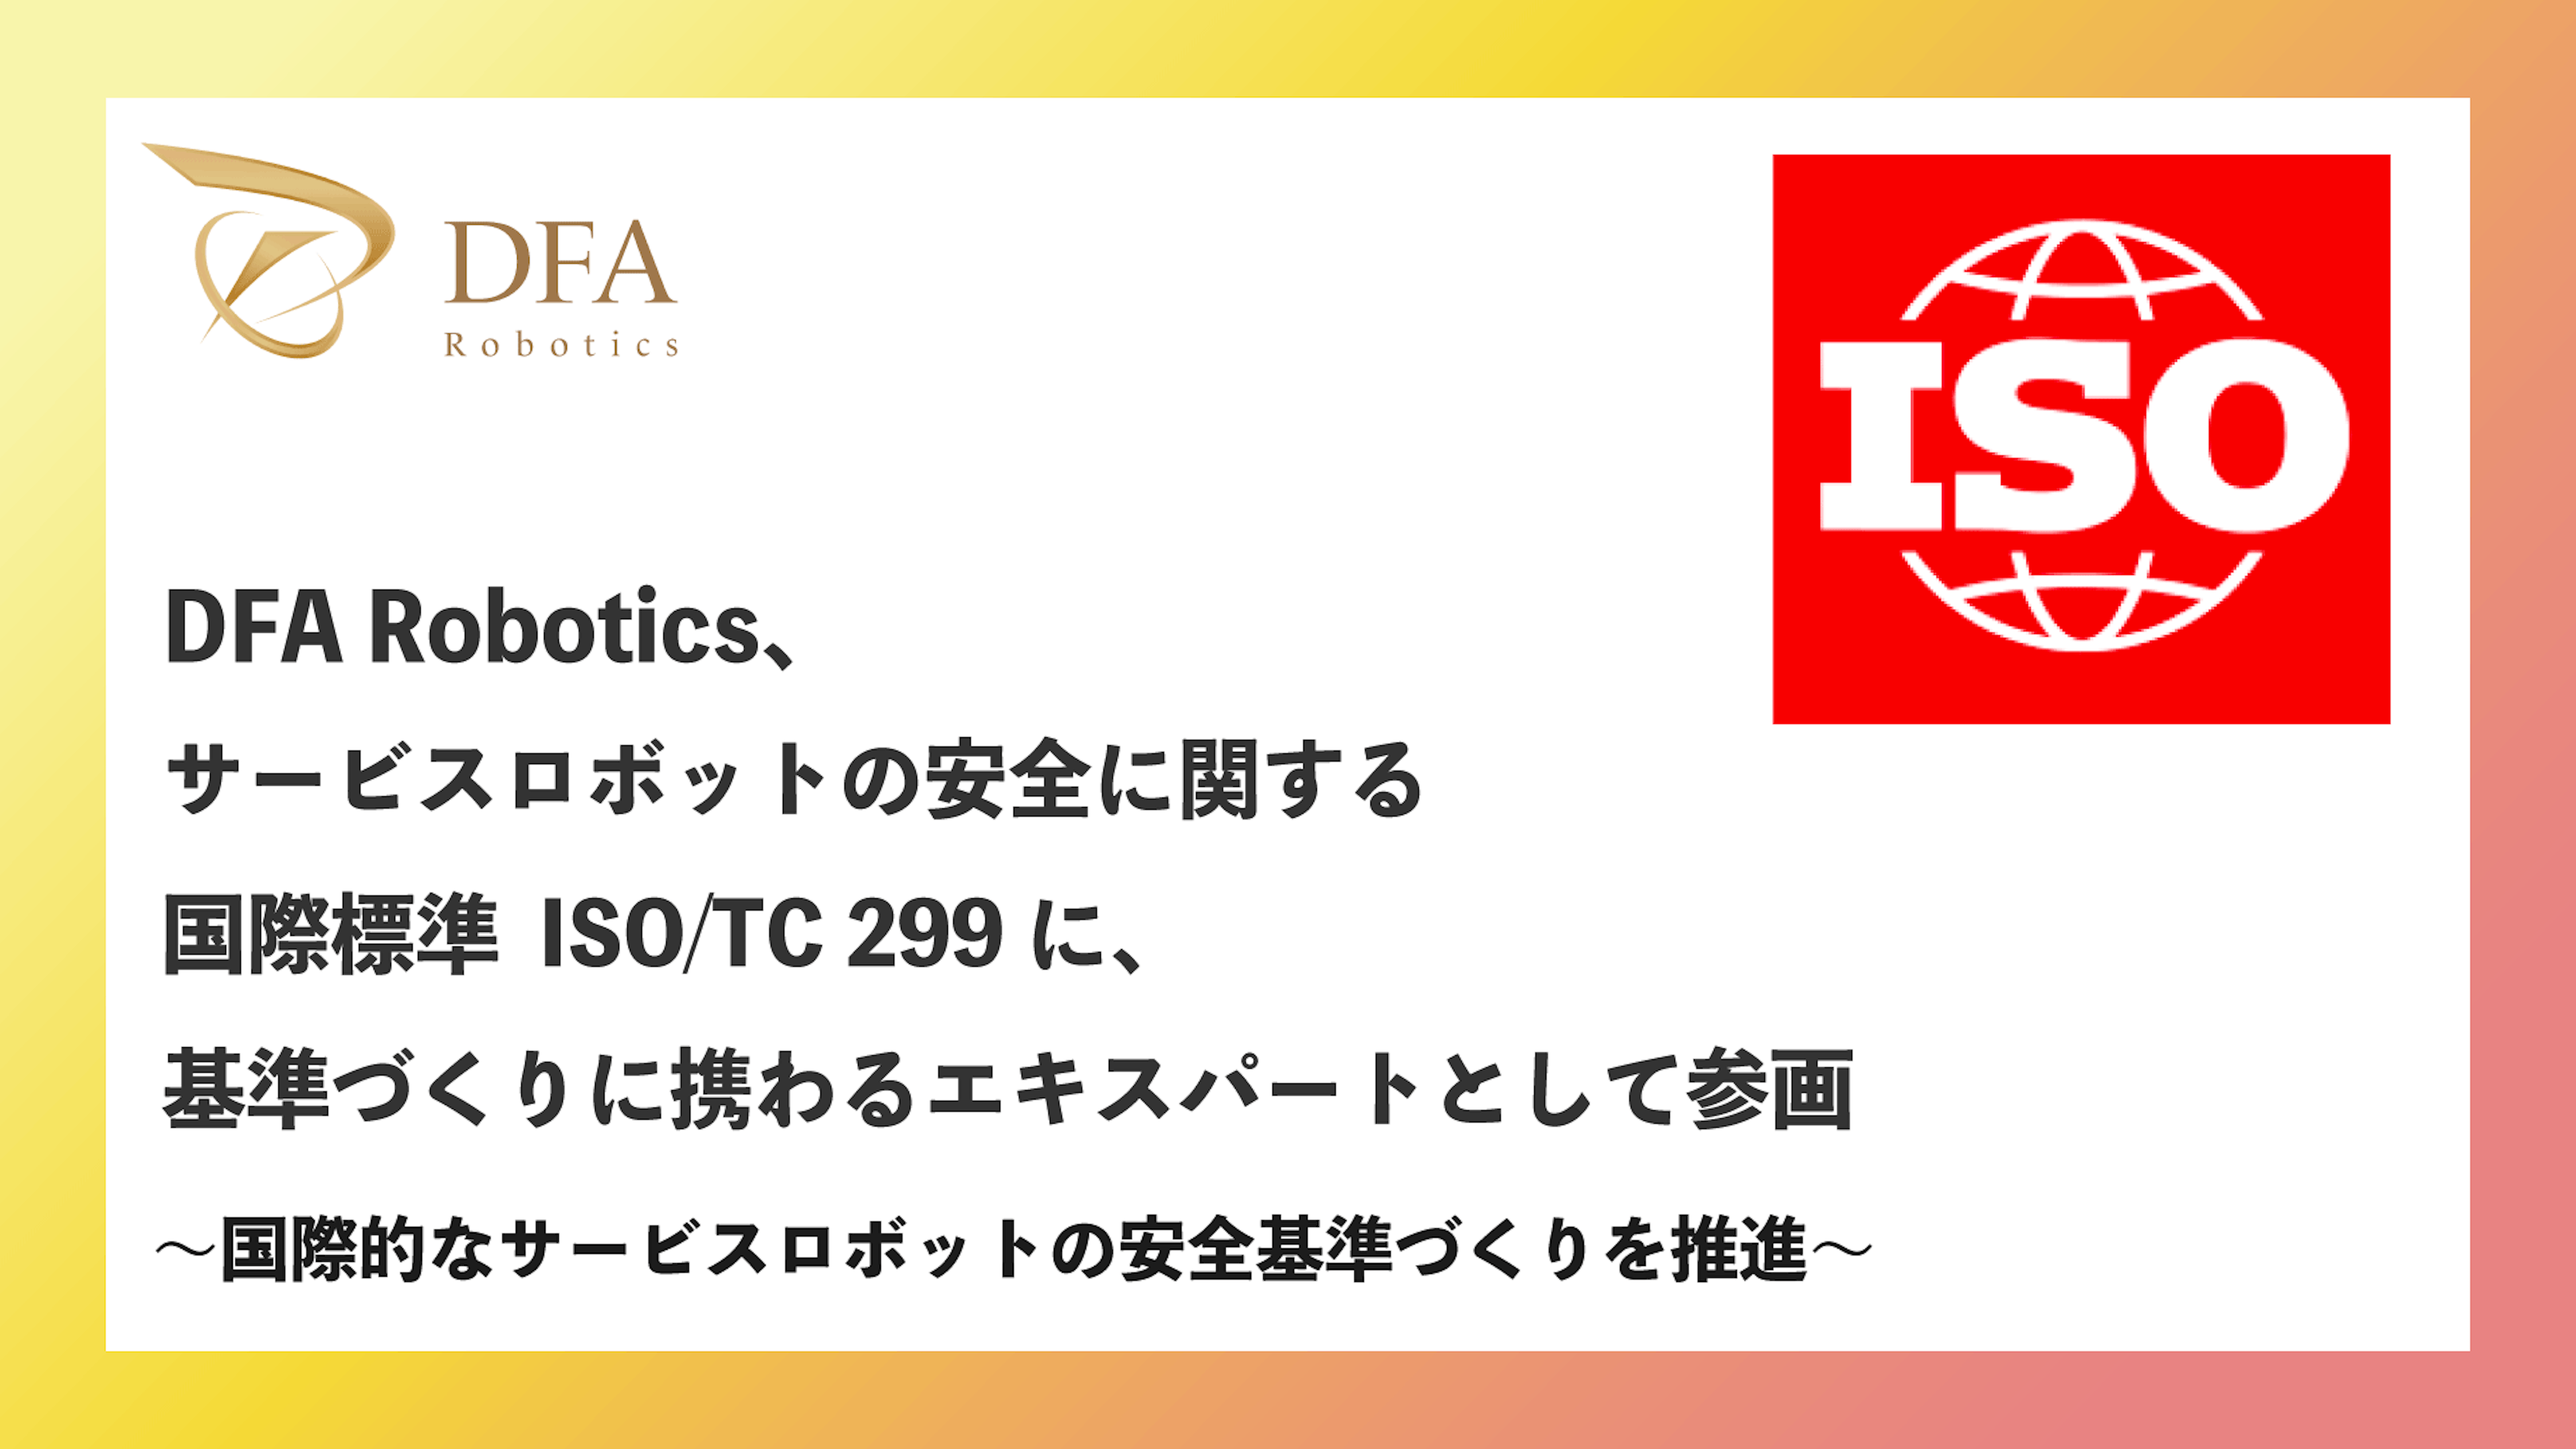 DFA Robotics、サービスロボットの安全に関する国際標準 ISO/TC 299 に、基準づくりに携わるエキスパートとして参画